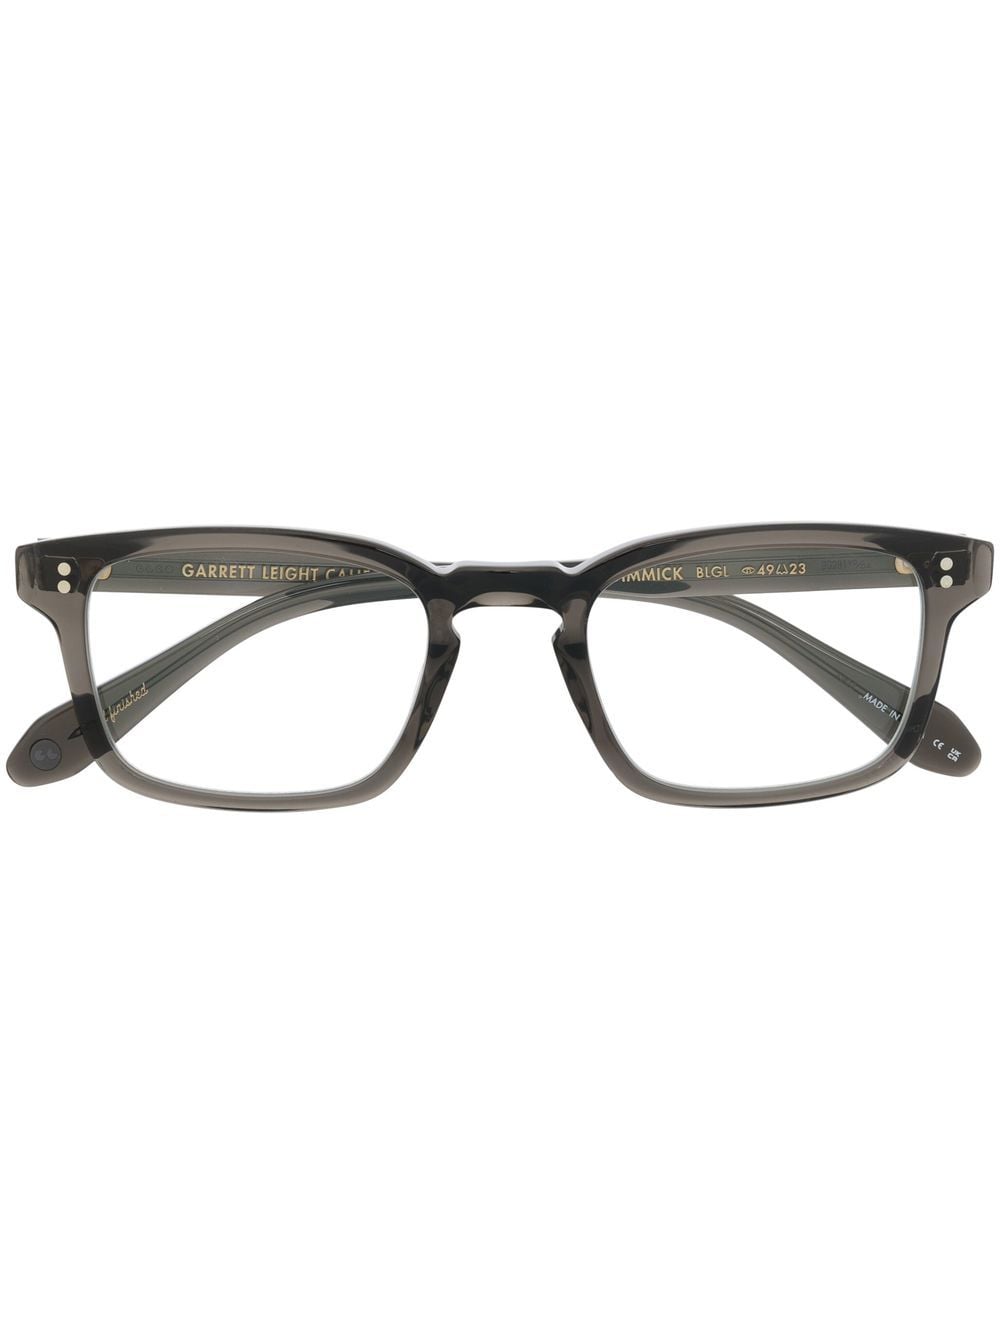 

Garrett Leight Dimmick rectangular-frame glasses - Green